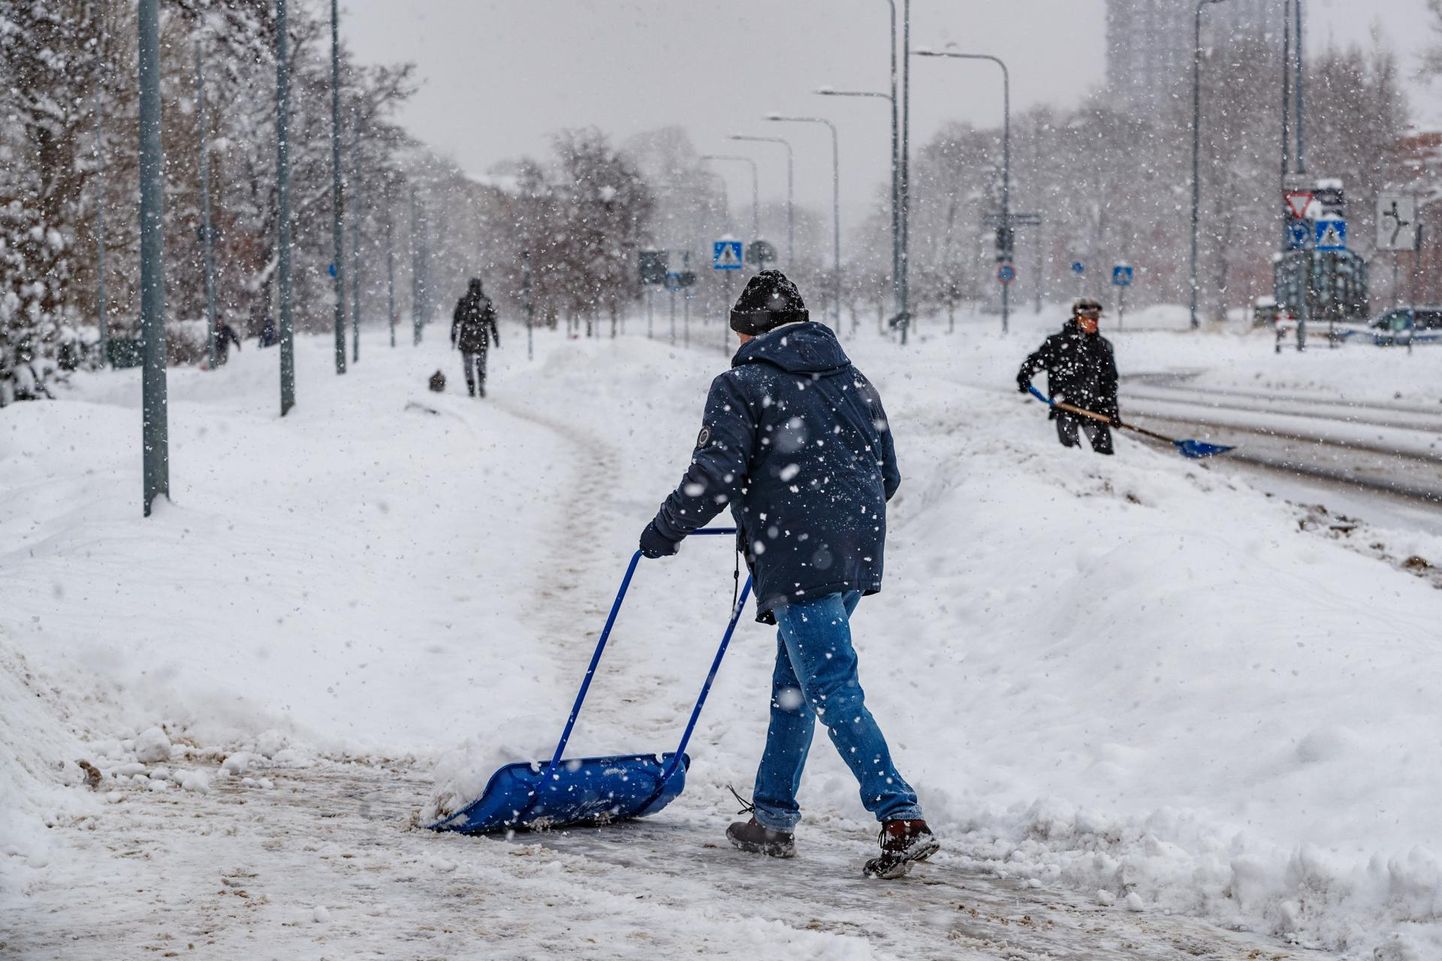 Kõnniteede puhastamine lumest on endiselt kinnistuomanike kohustus.